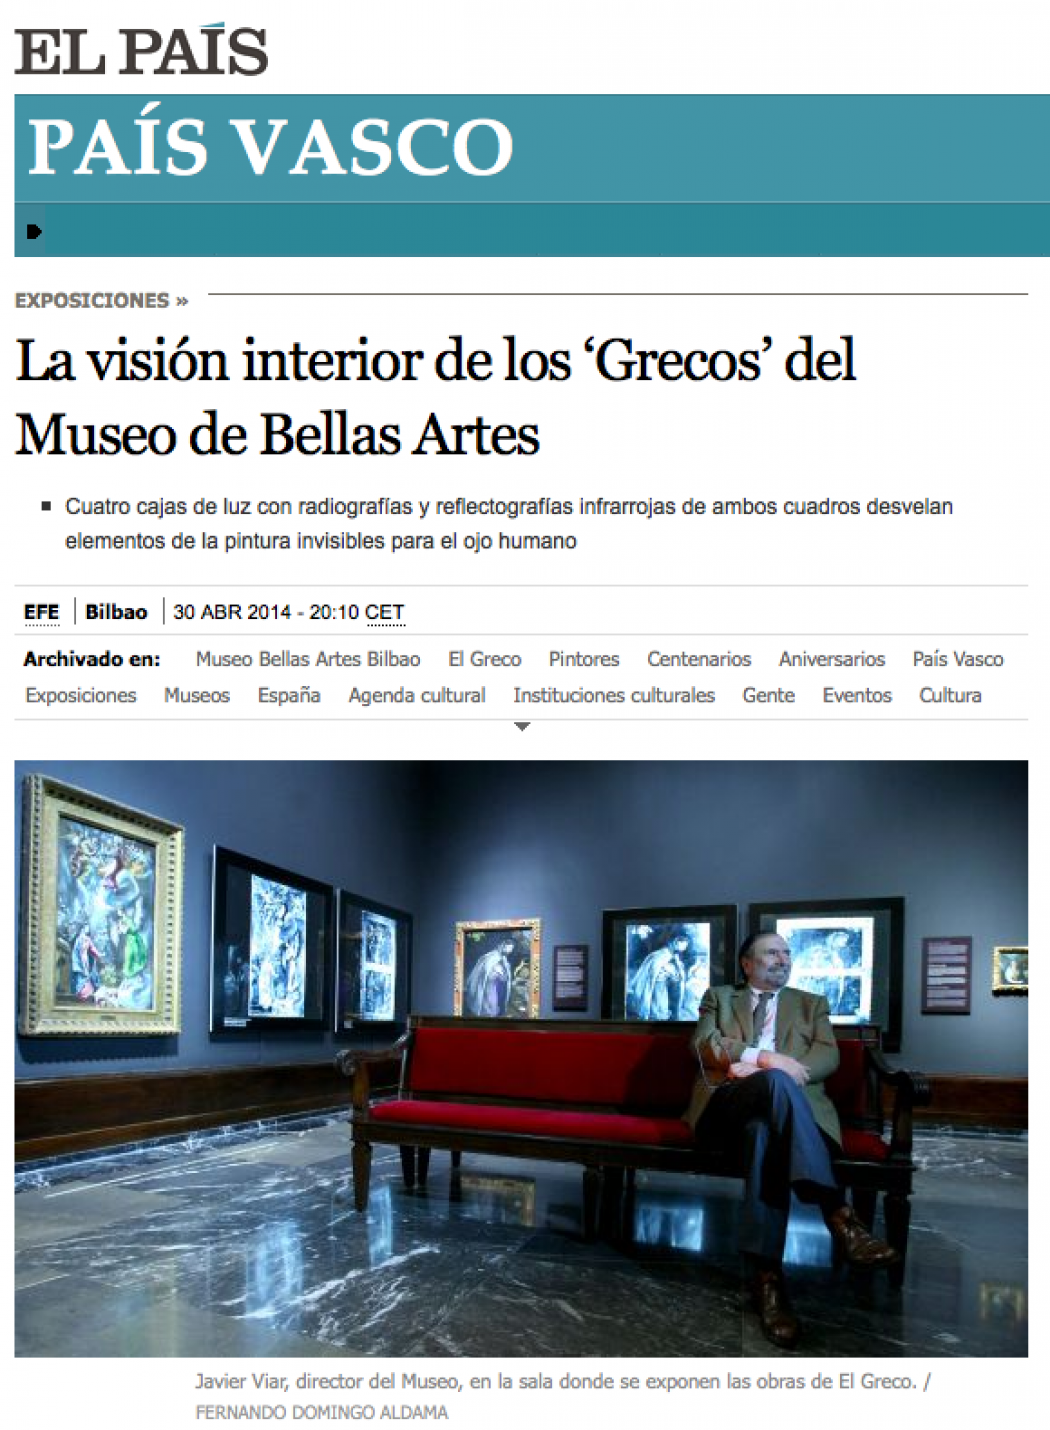 La visión interior de los ‘Grecos’ del Museo de Bellas Artes de Bilbao